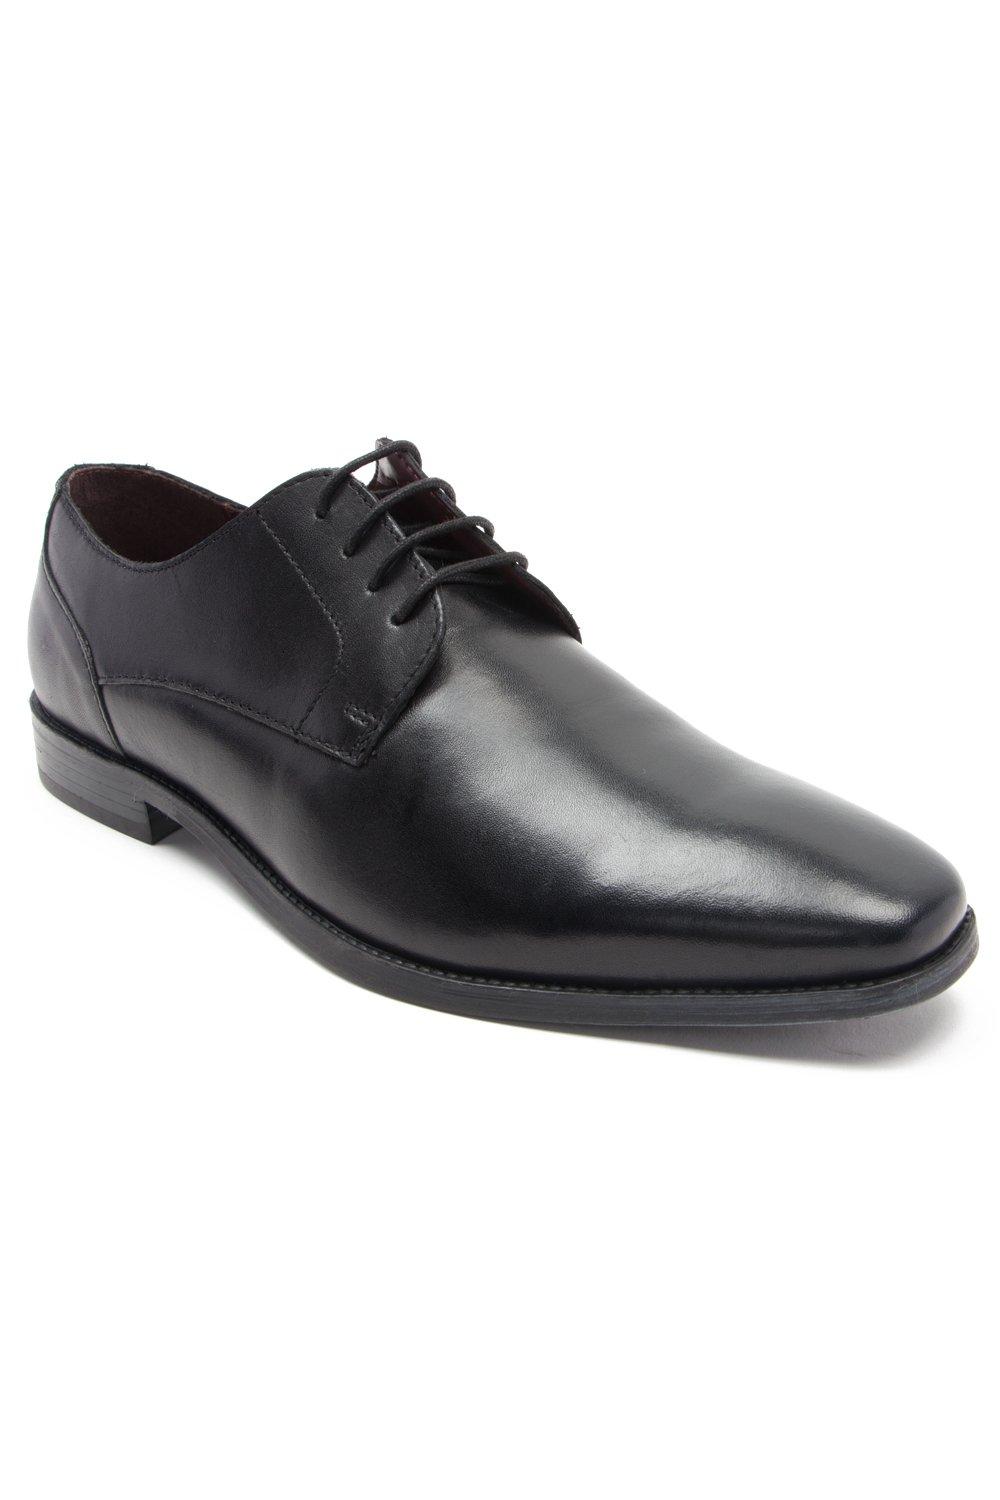 Формальные кожаные туфли дерби на шнуровке 'Falcon' Thomas Crick, черный роскошные черные кожаные мужские туфли для свадьбы деловые оксфорды деловые повседневные офисные туфли для работы классические туфли бе